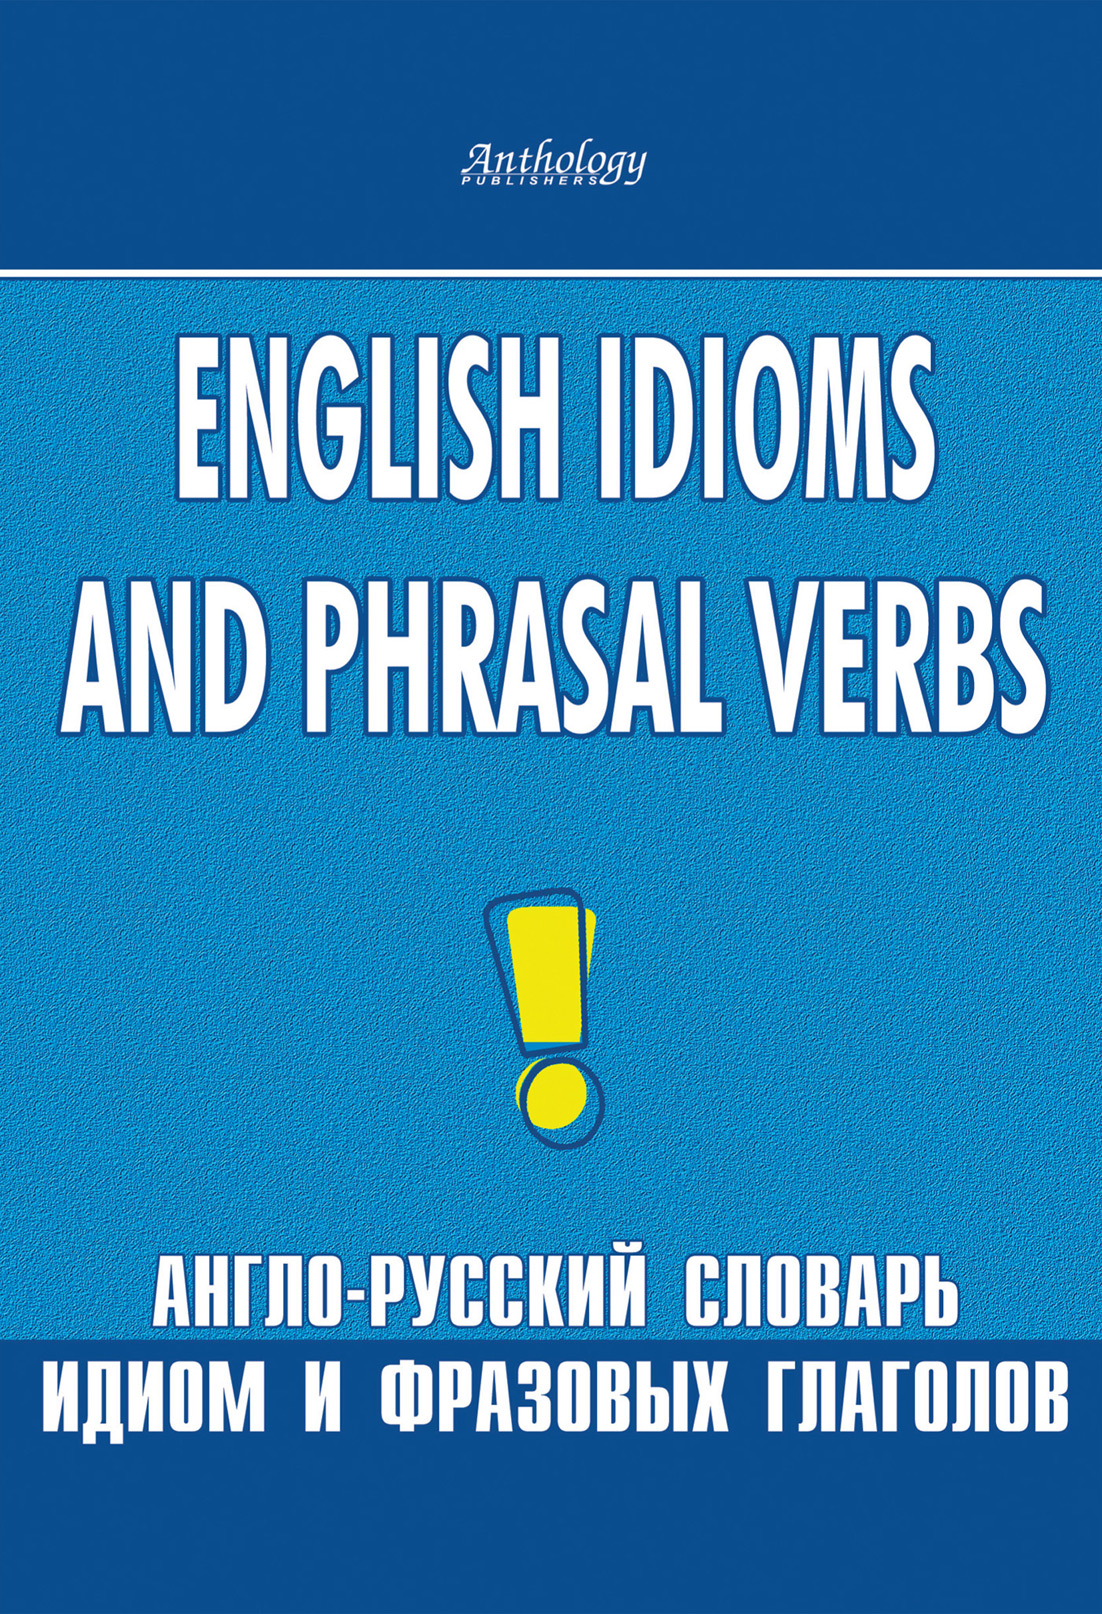 English Idioms and Phrasal Verbs.Англо-русский словарь идиом и фразовых глаголов